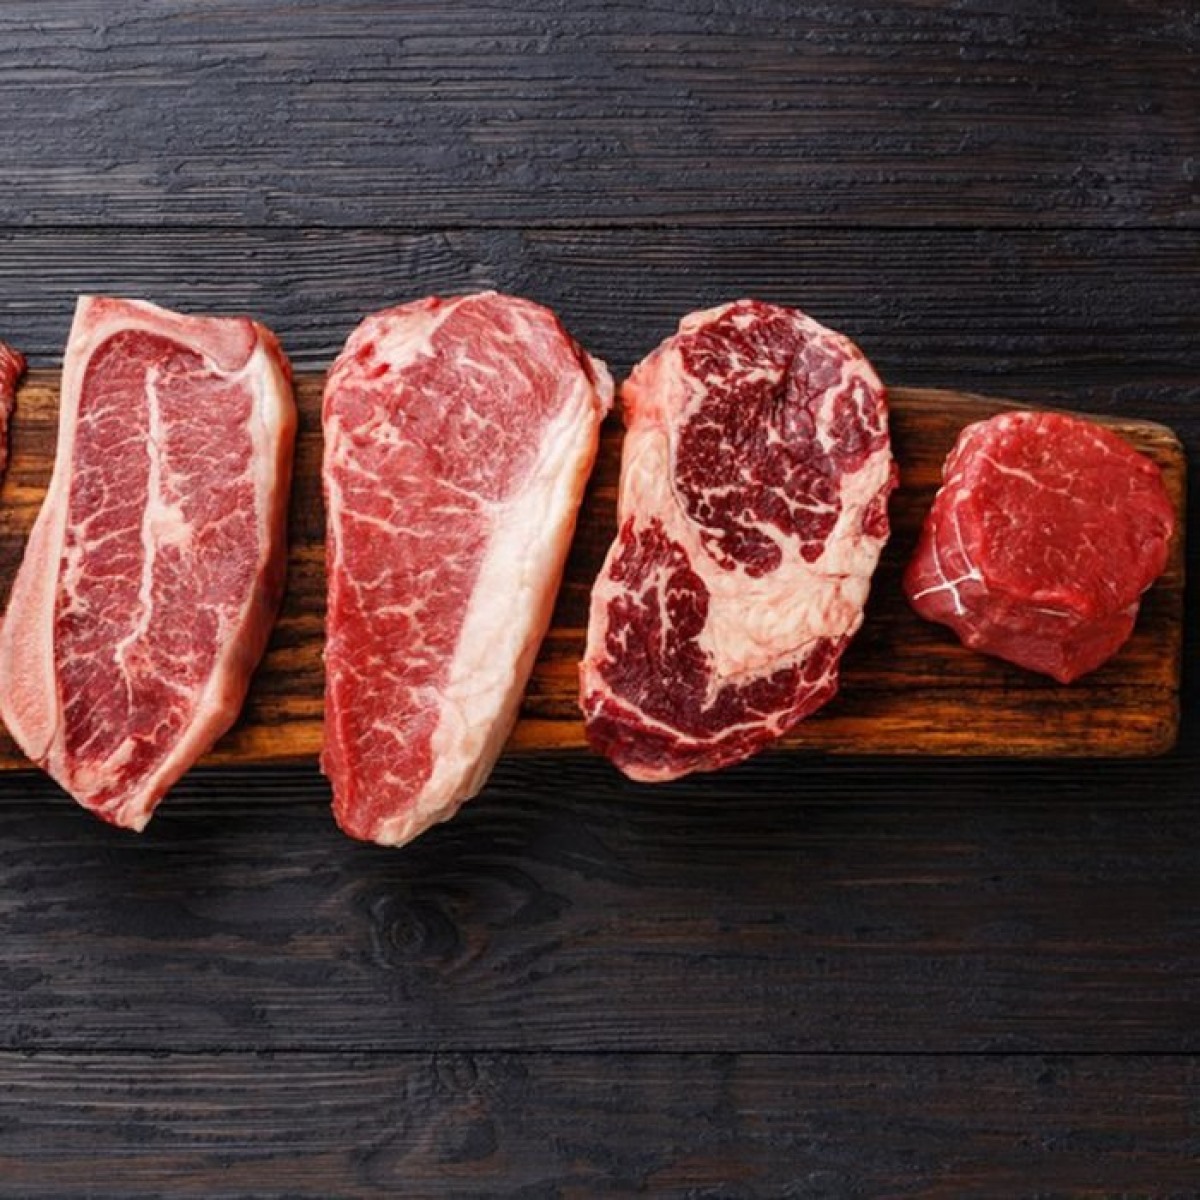 Điều gì sẽ xảy ra nếu bạn ăn quá nhiều thịt? Có lẽ bạn đã nghe rất nhiều ý kiến trái chiều xoay quanh câu hỏi liệu ăn thịt có lợi hay có hại cho sức khỏe. Mặc dù câu trả lời chính xác vẫn chưa được thống nhất, các chuyên gia đã tìm ra rằng ăn quá nhiều thịt có thể làm tăng nguy cơ mắc một số vấn đề sức khỏe.